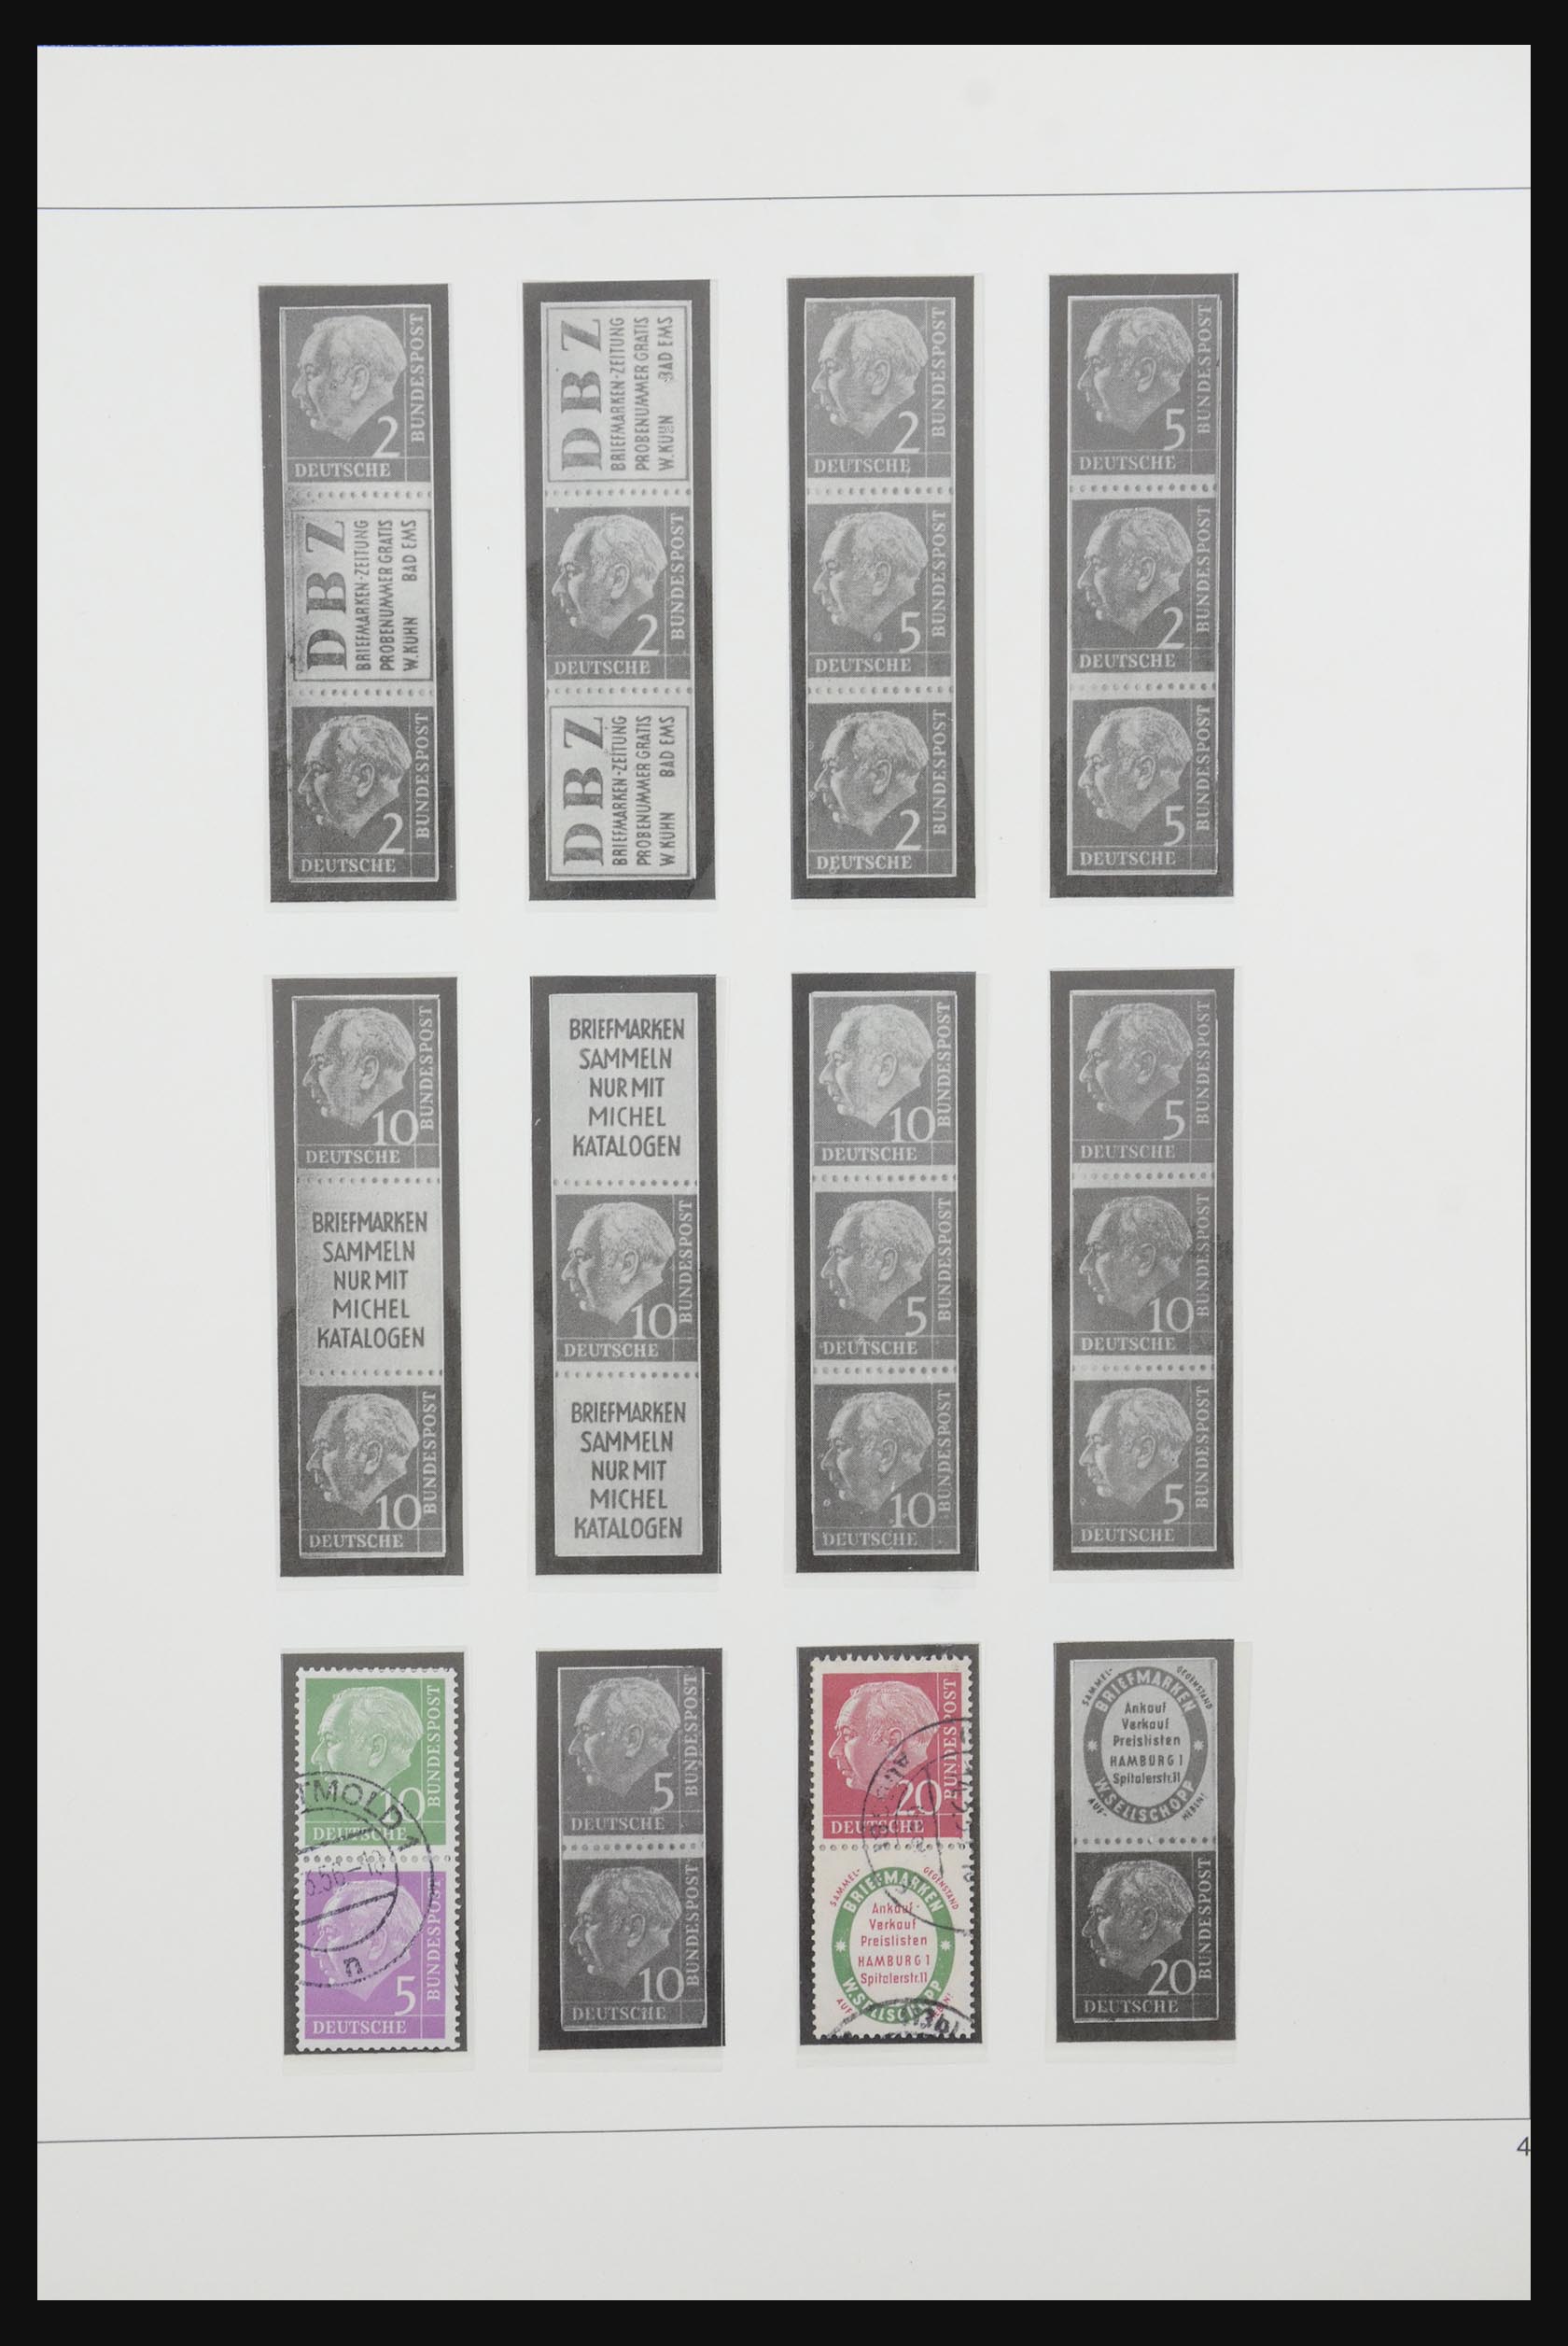 31842 004 - 31842 Bundespost combinaties 1951-2003.